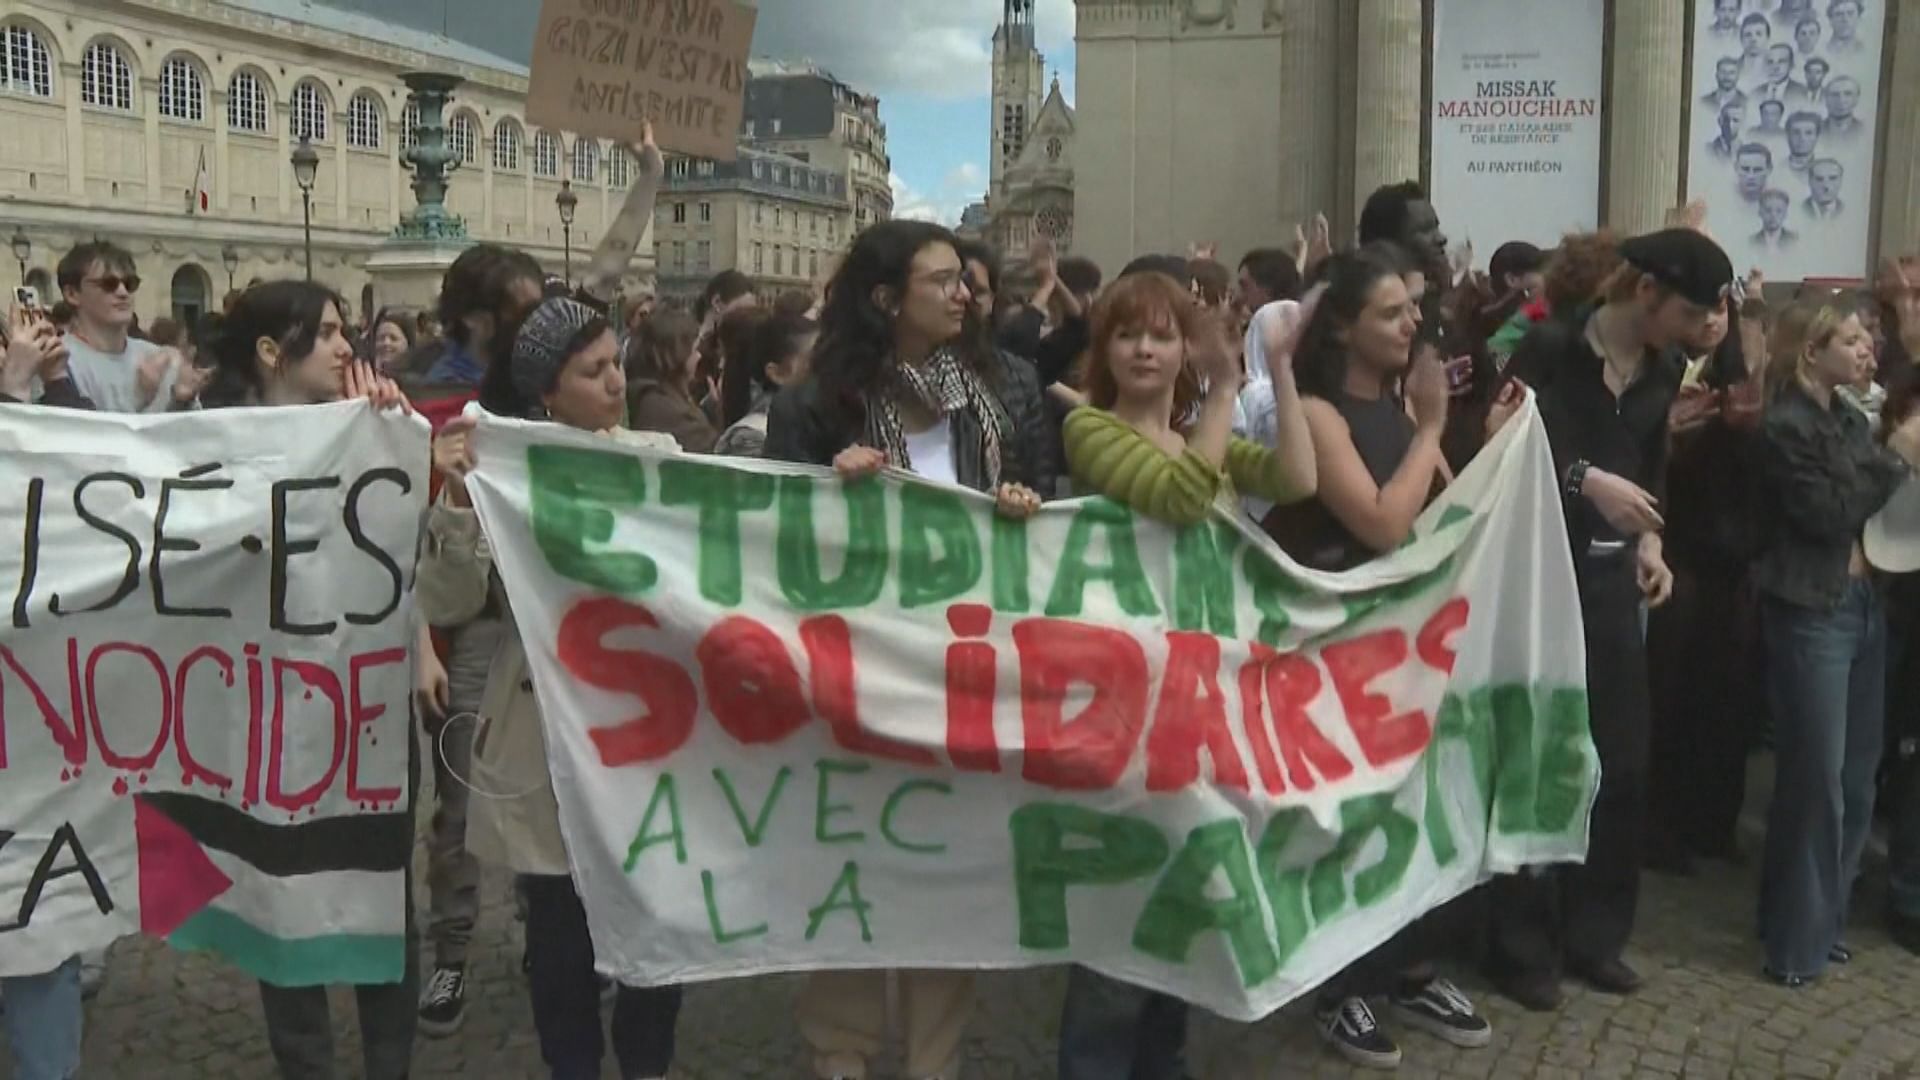 法國大學有示威聲援巴勒斯坦 過程大致和平